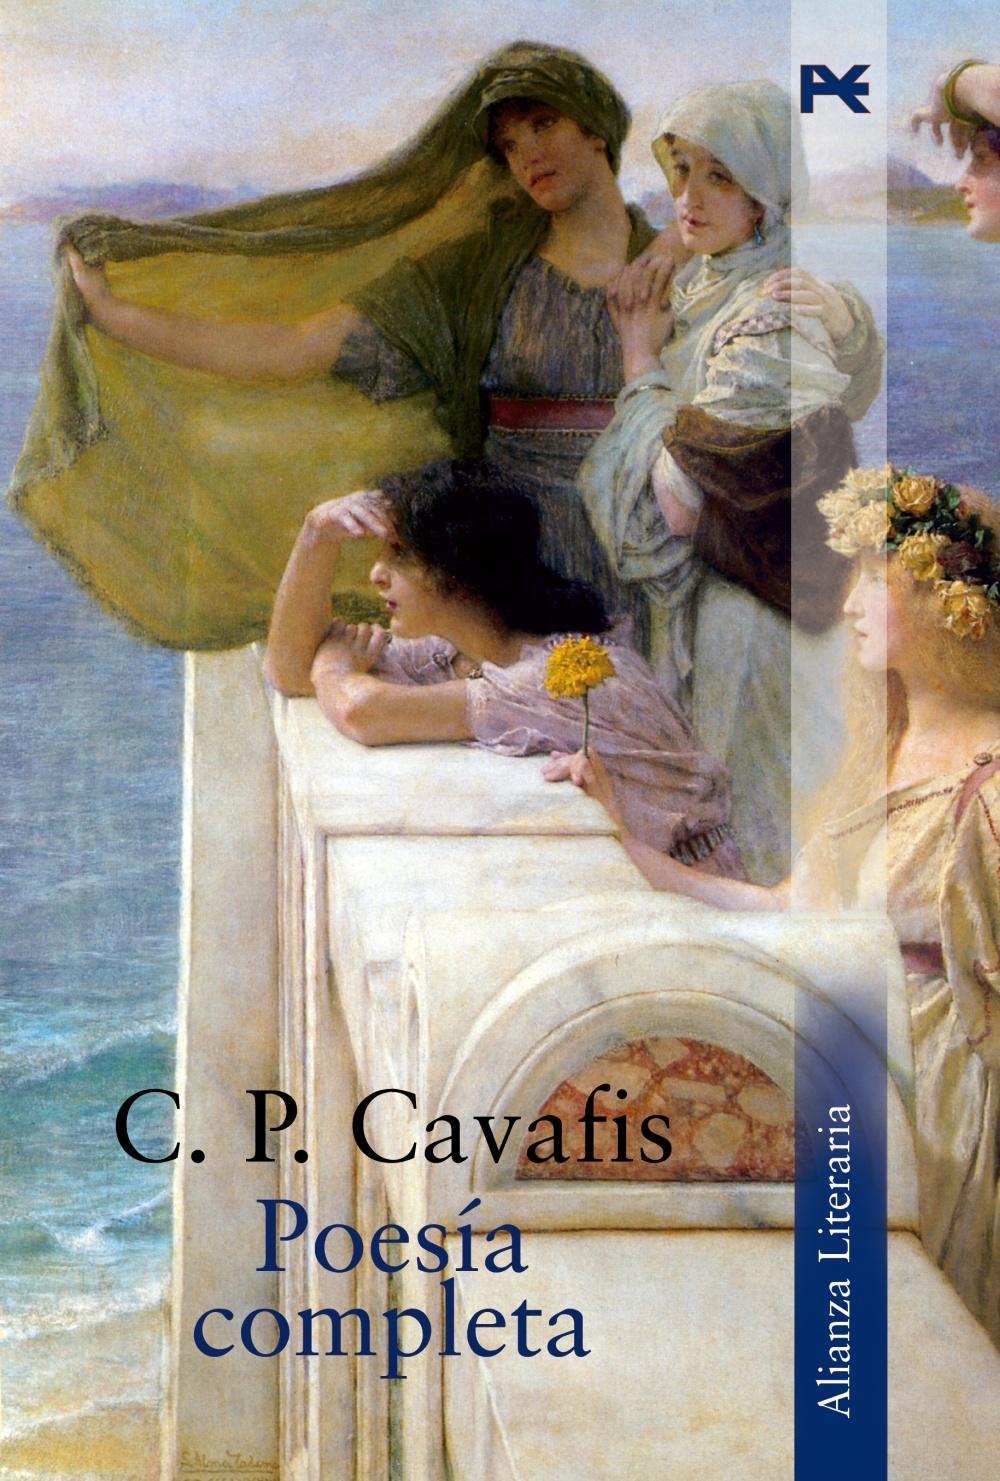 Poesía completa "(C. P. Cavafis)"